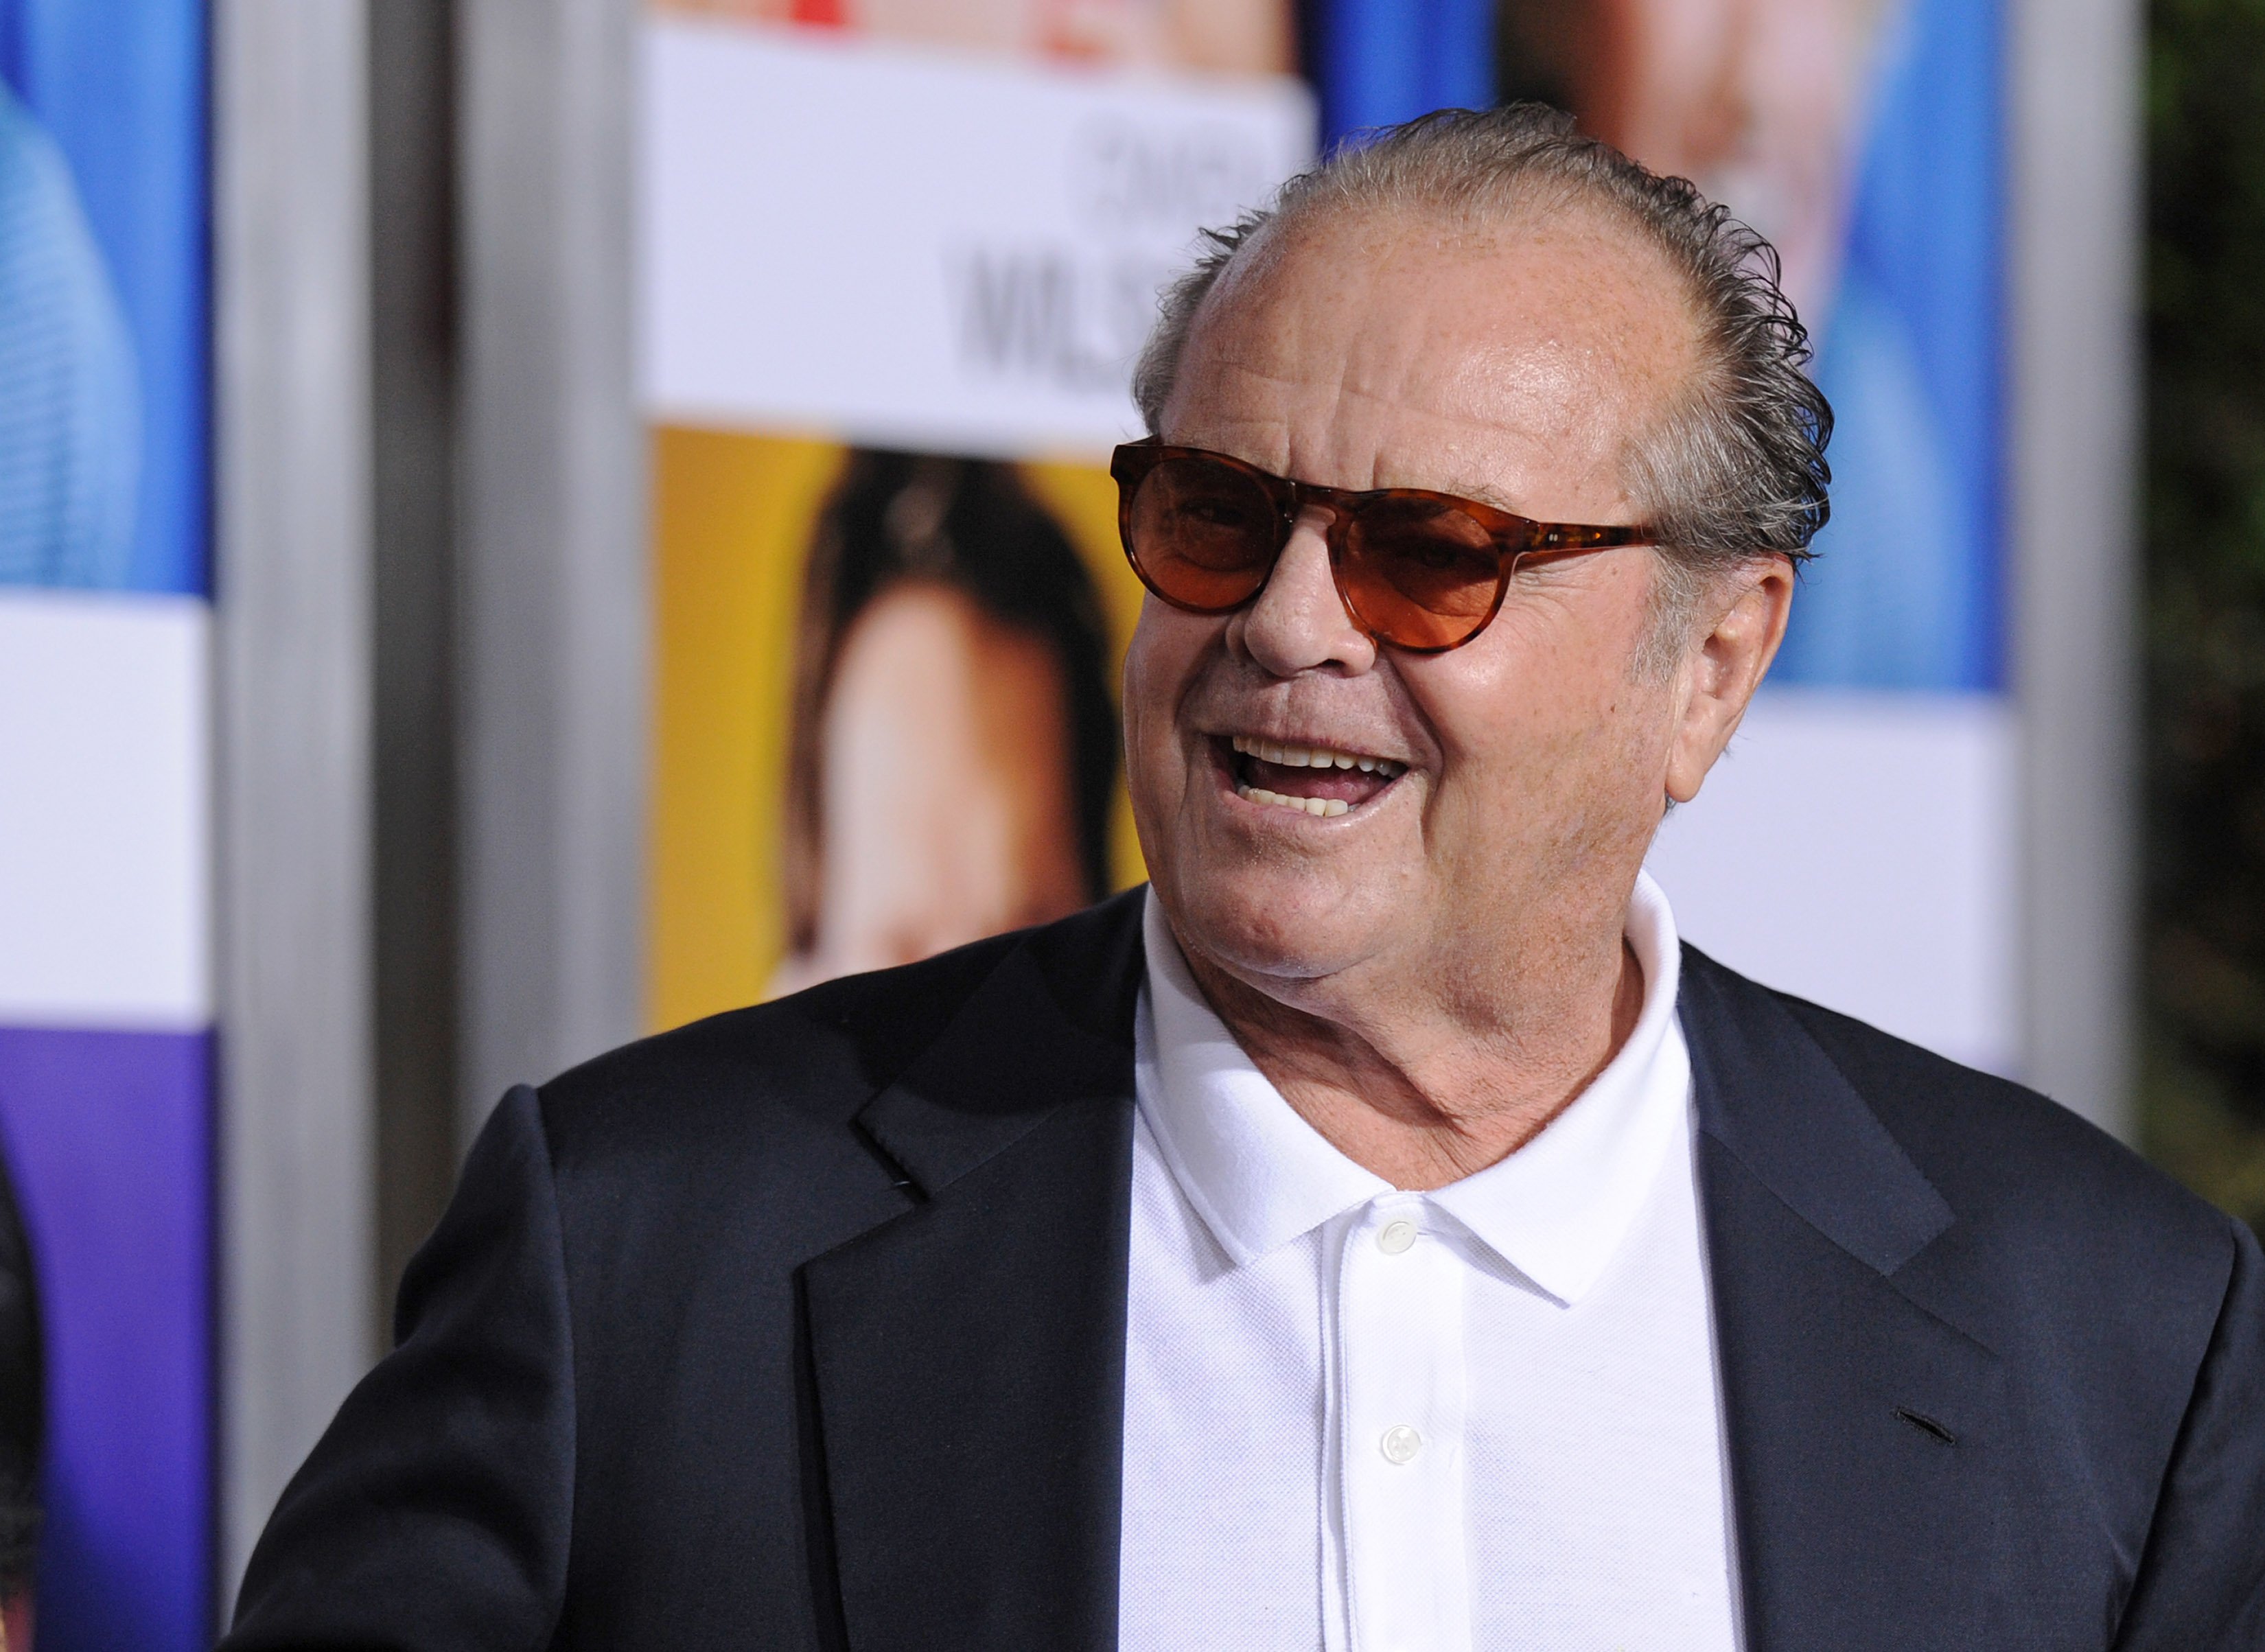 Jack Nicholson ja no és així: als 86 anys al balcó de casa seva, pateix Alzheimer